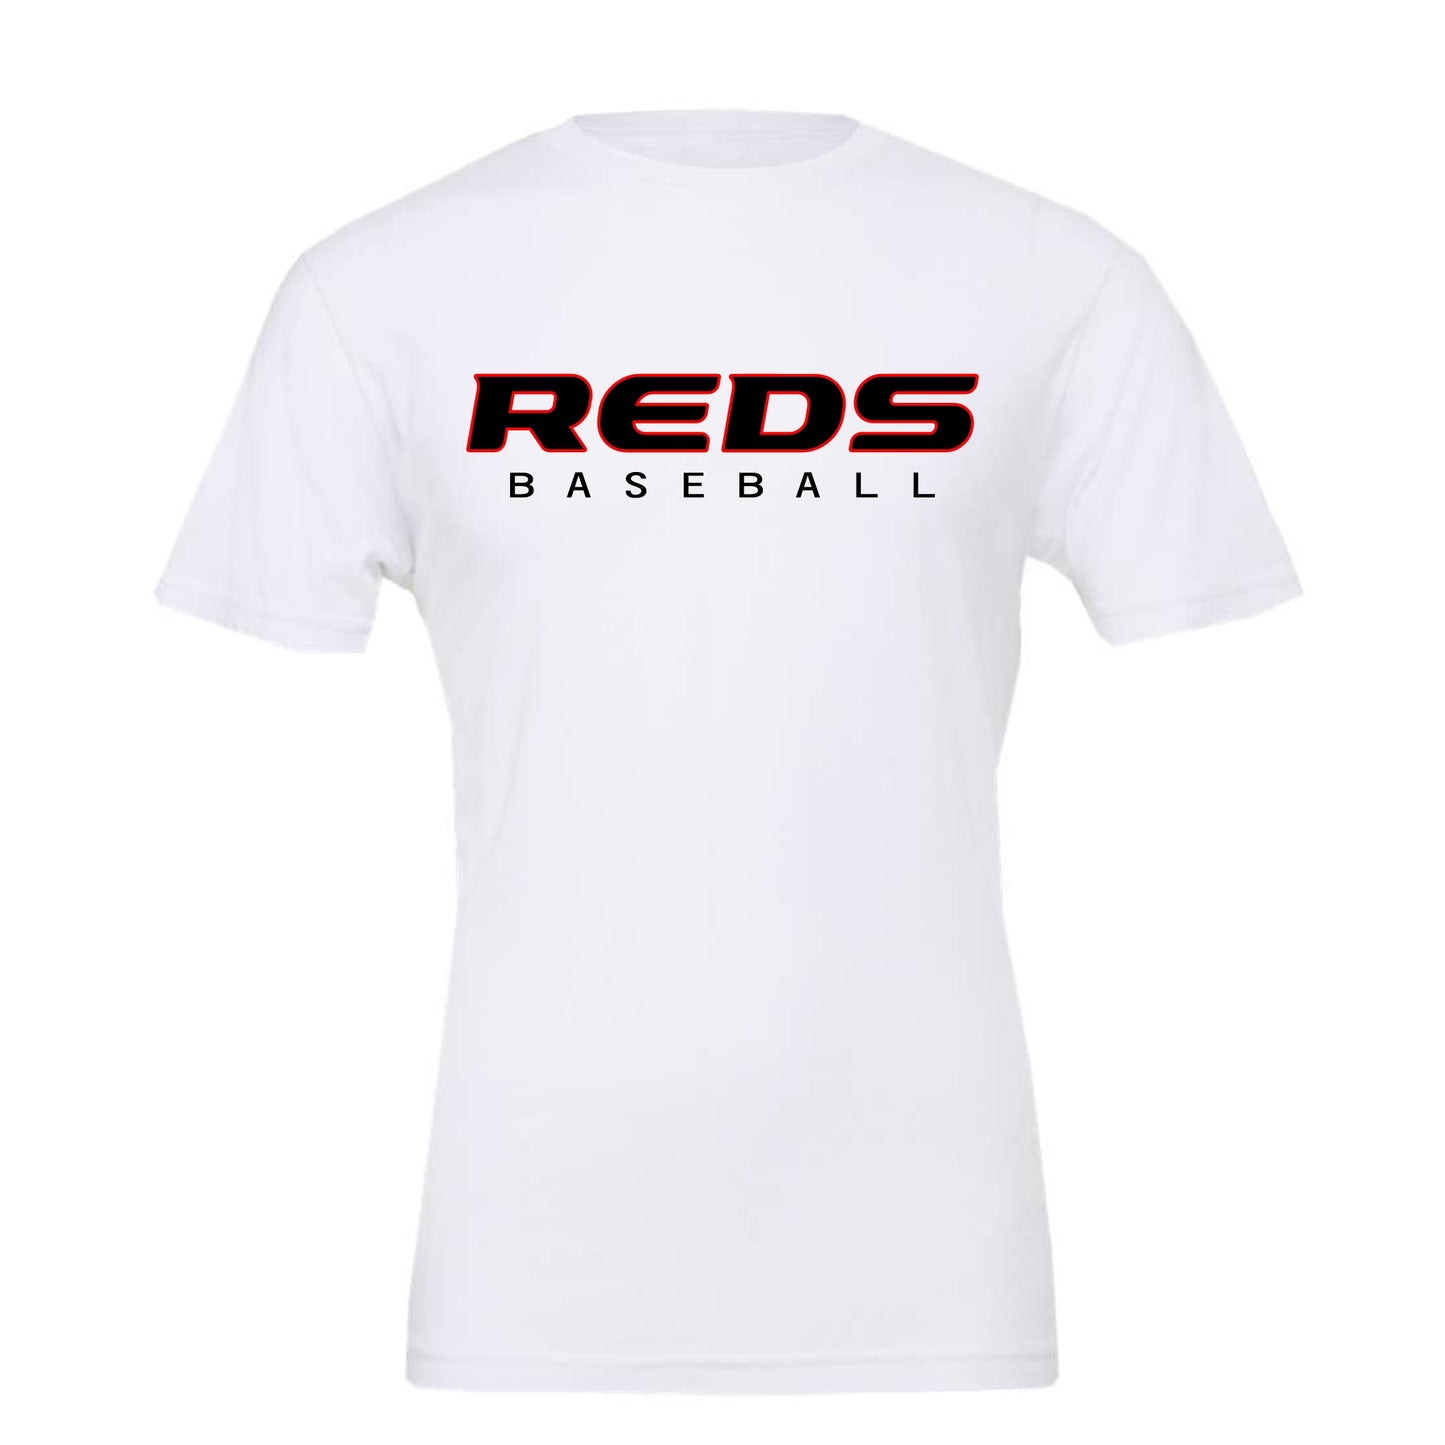 Reds Baseball Next Level Premium Tee